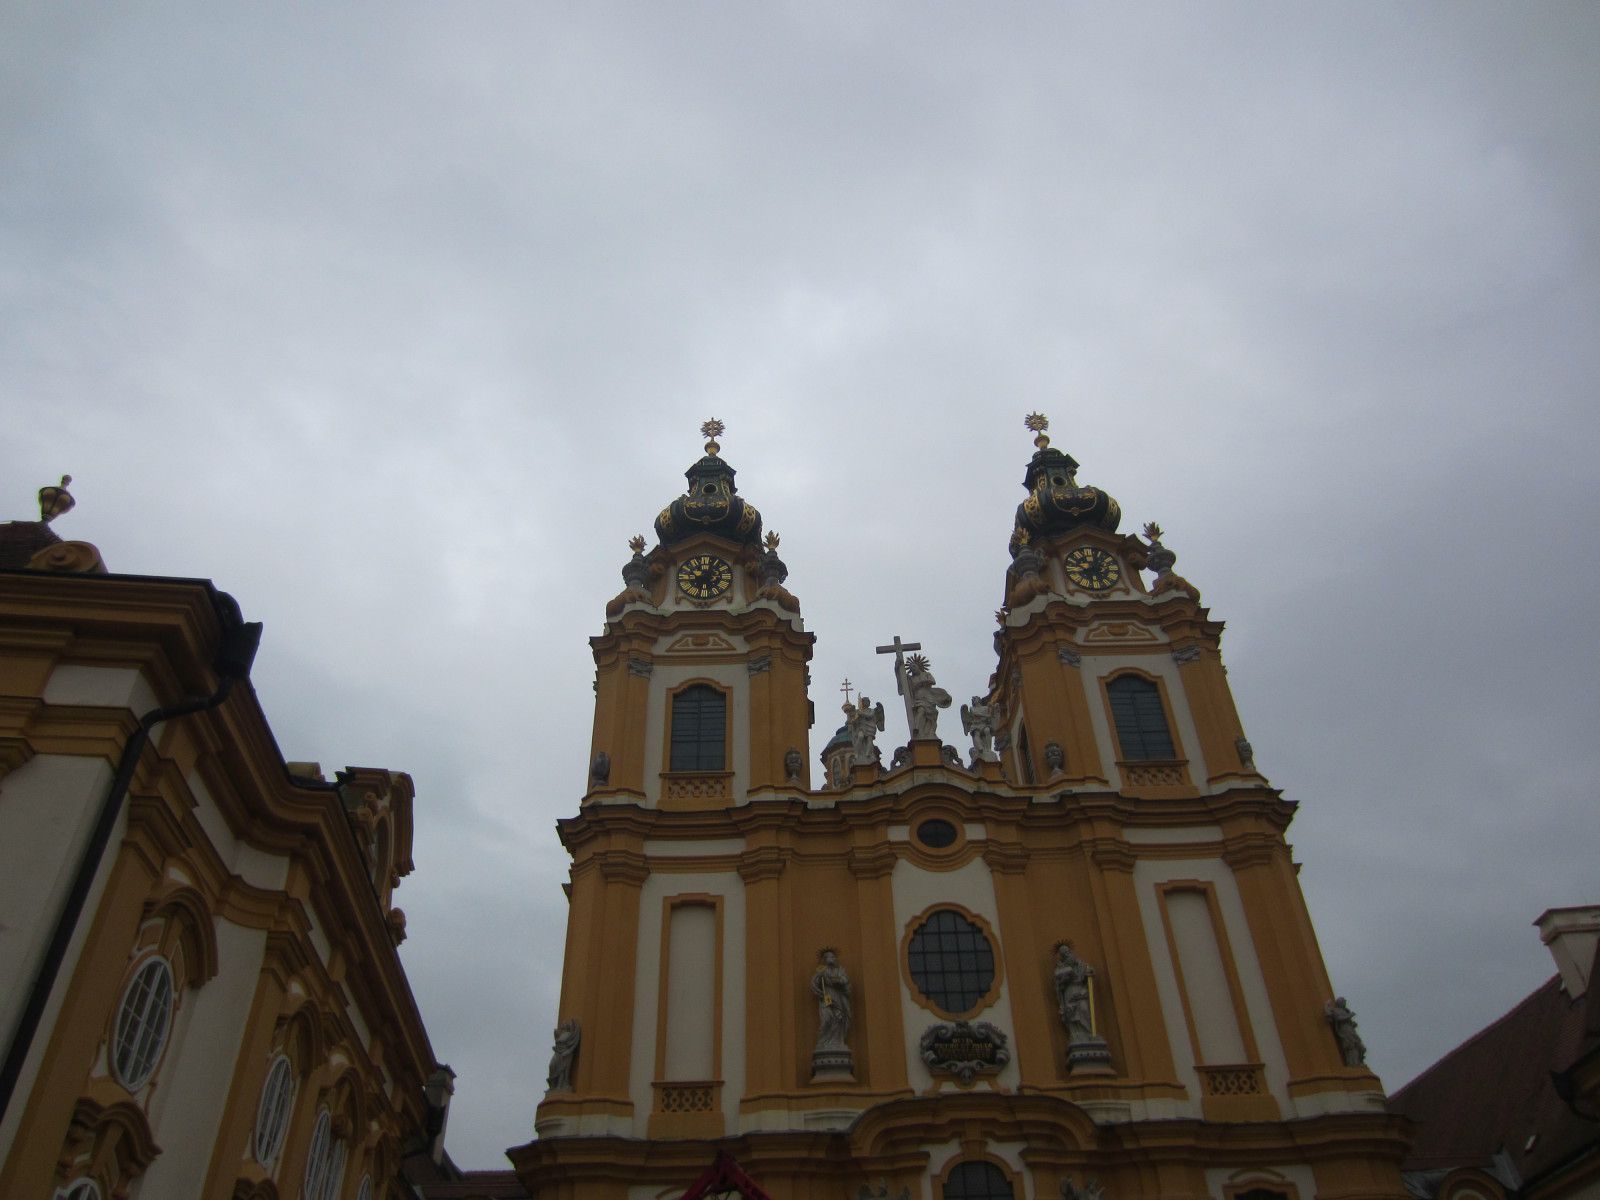 Le bateau du savoir
Photos: EmMa (M. et Em. presse 2014)
Melk est une ville de la Basse-Autriche, célèbre pour son abbaye bénédictine bâtie en surplomb du Danube. L'abbaye a été fondée en 1089...